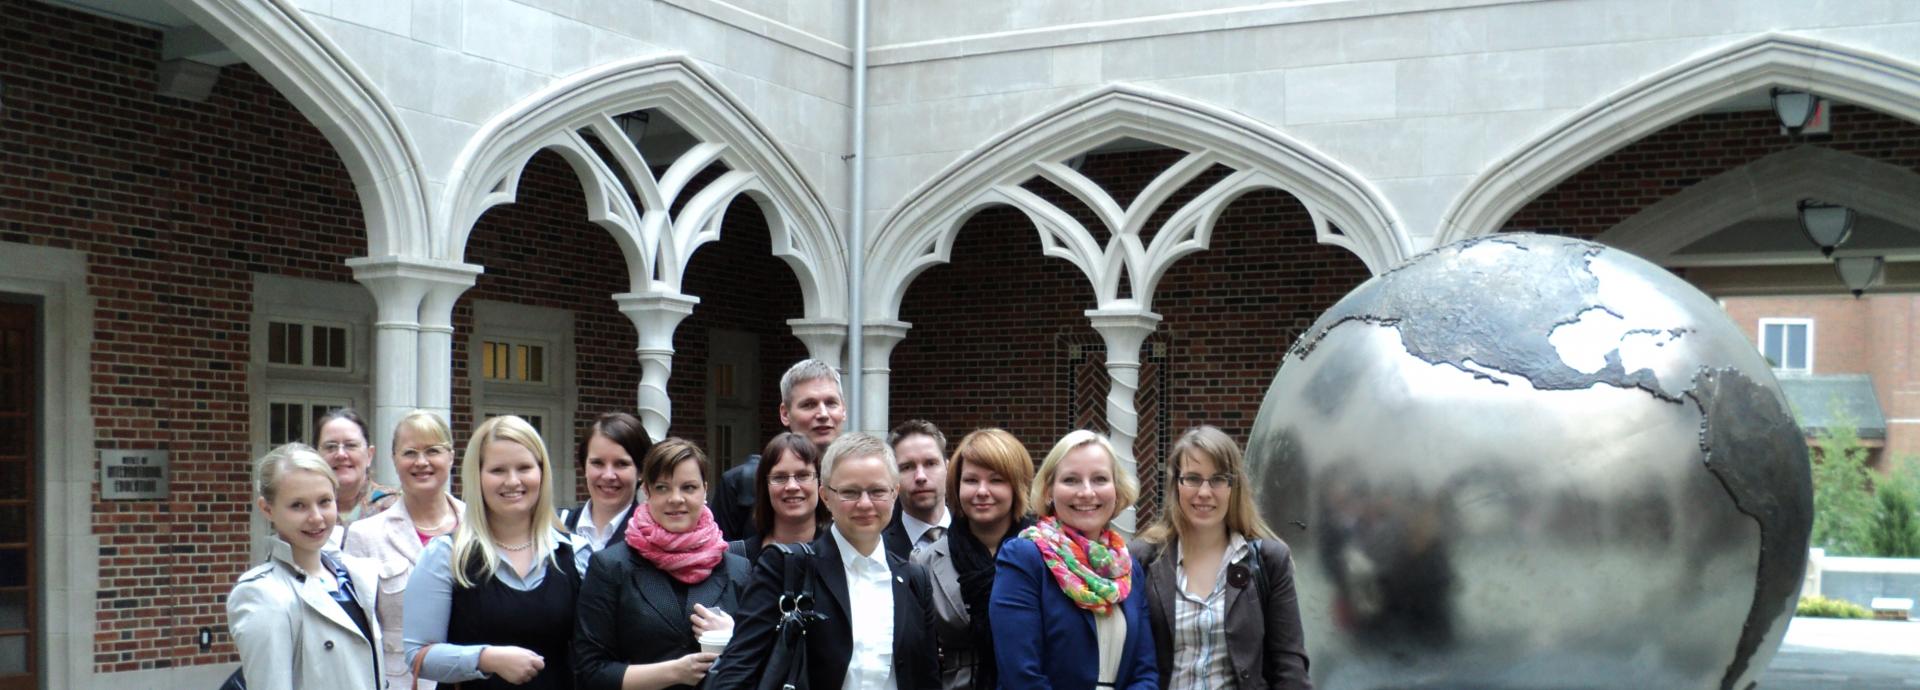 Alumni Affairs study tour participants at the University of Richmond